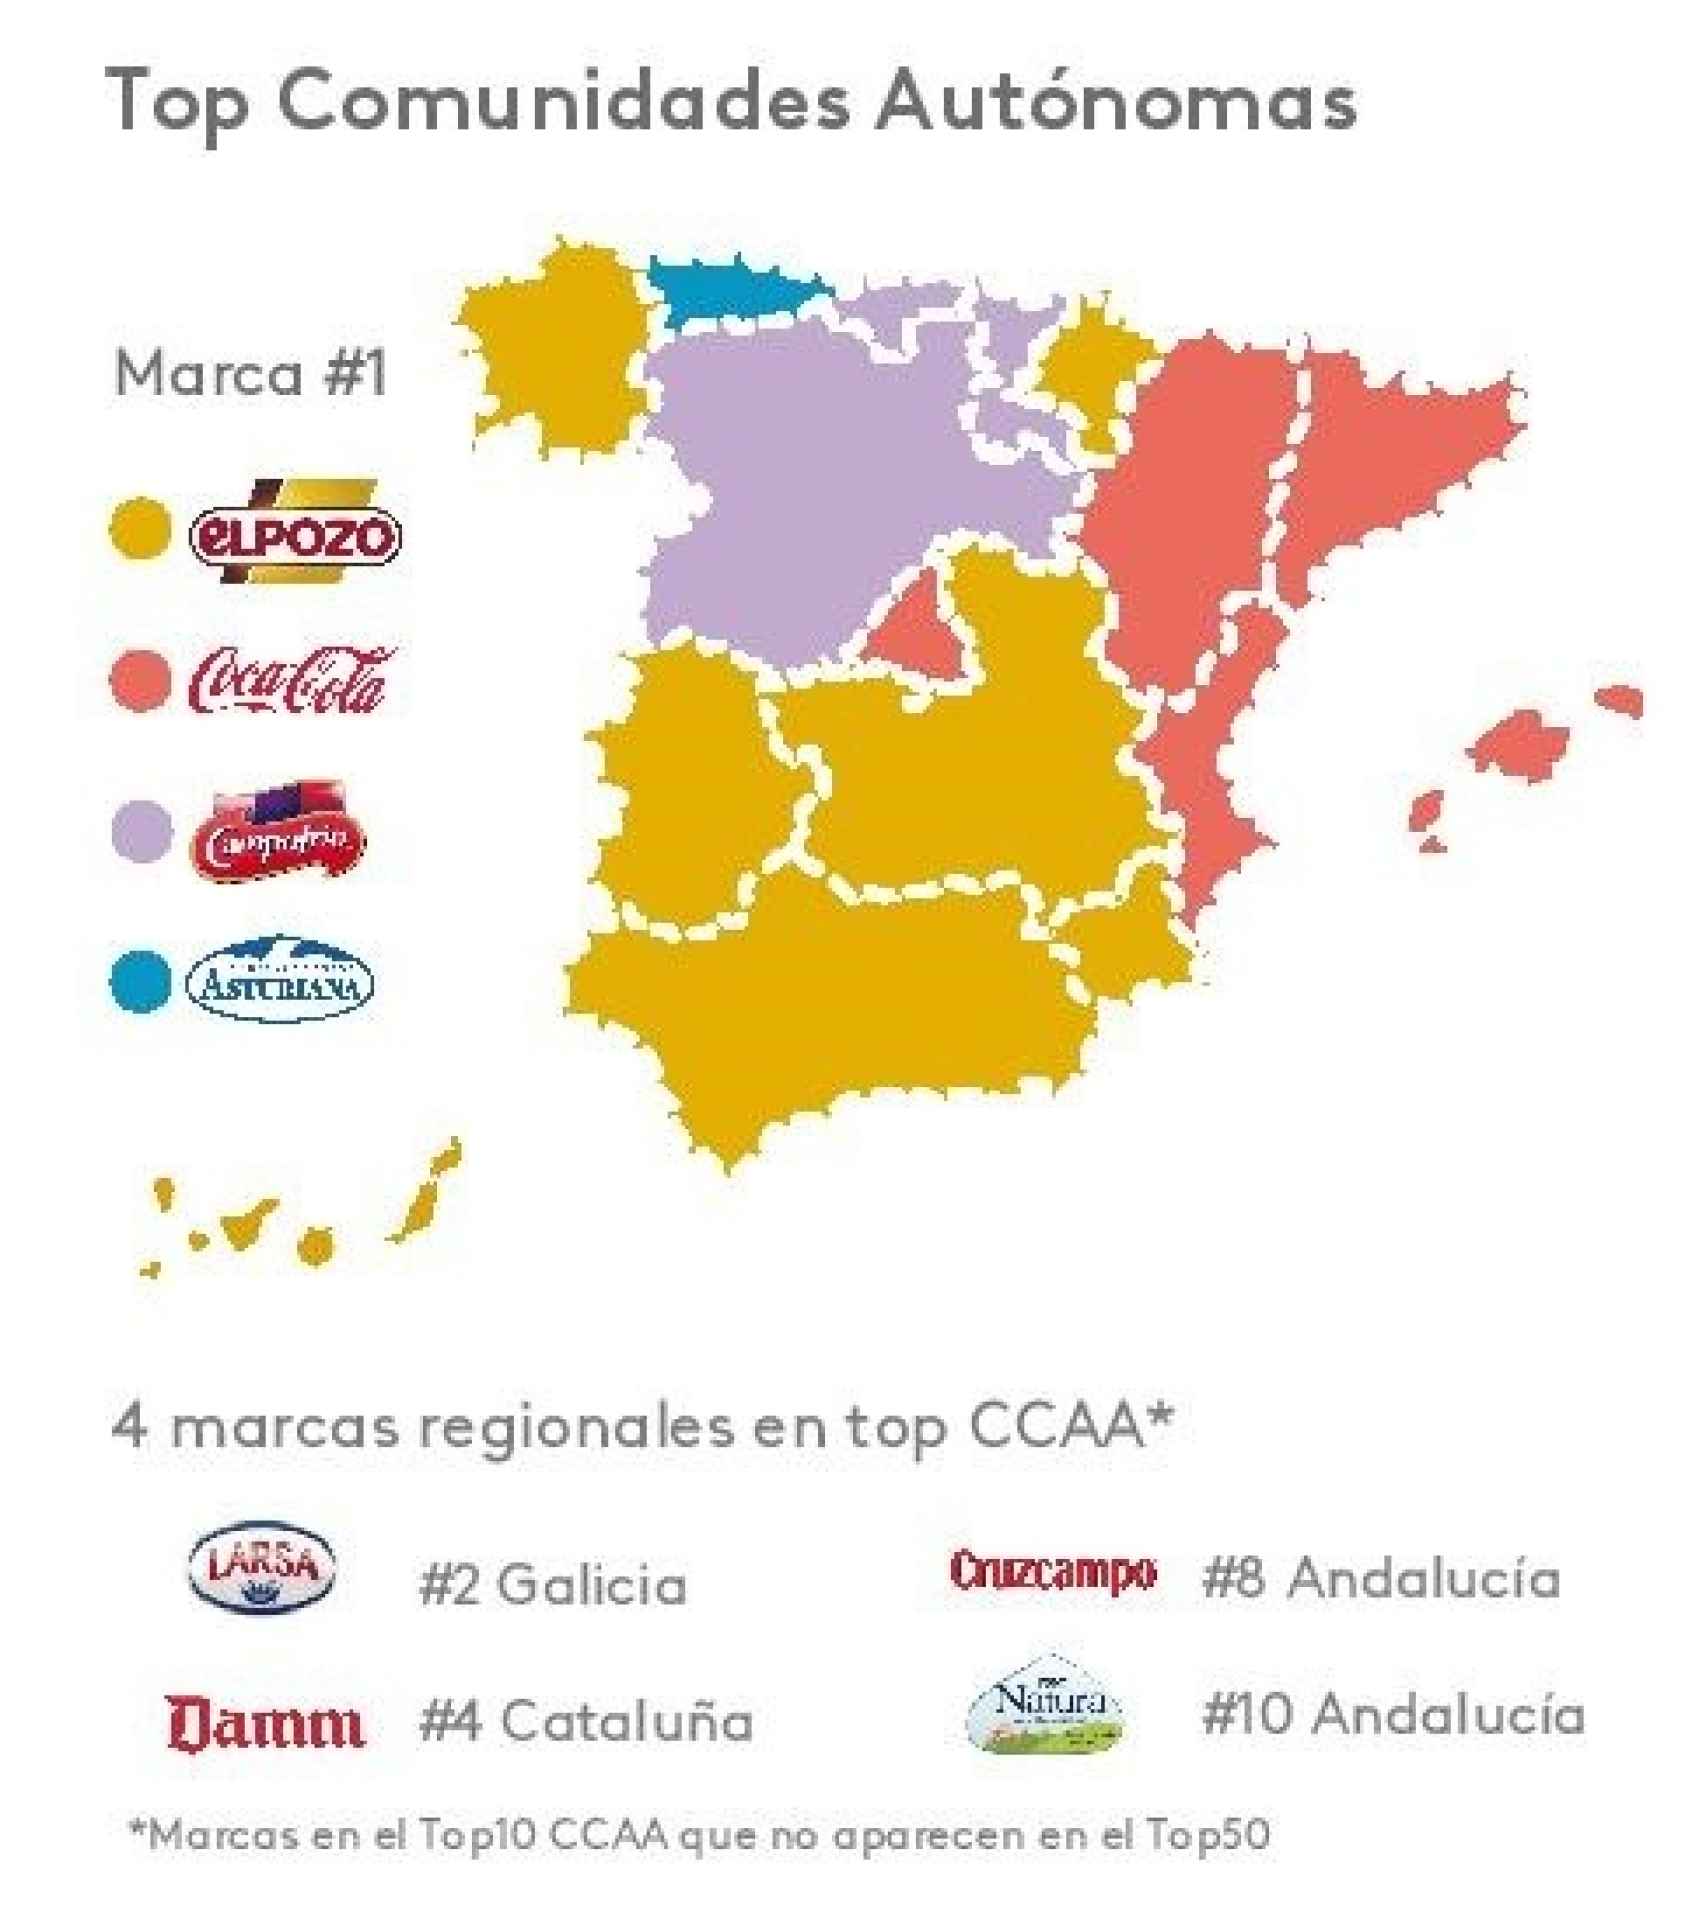 Mapa de las marcas por Comunidades Autónomas.